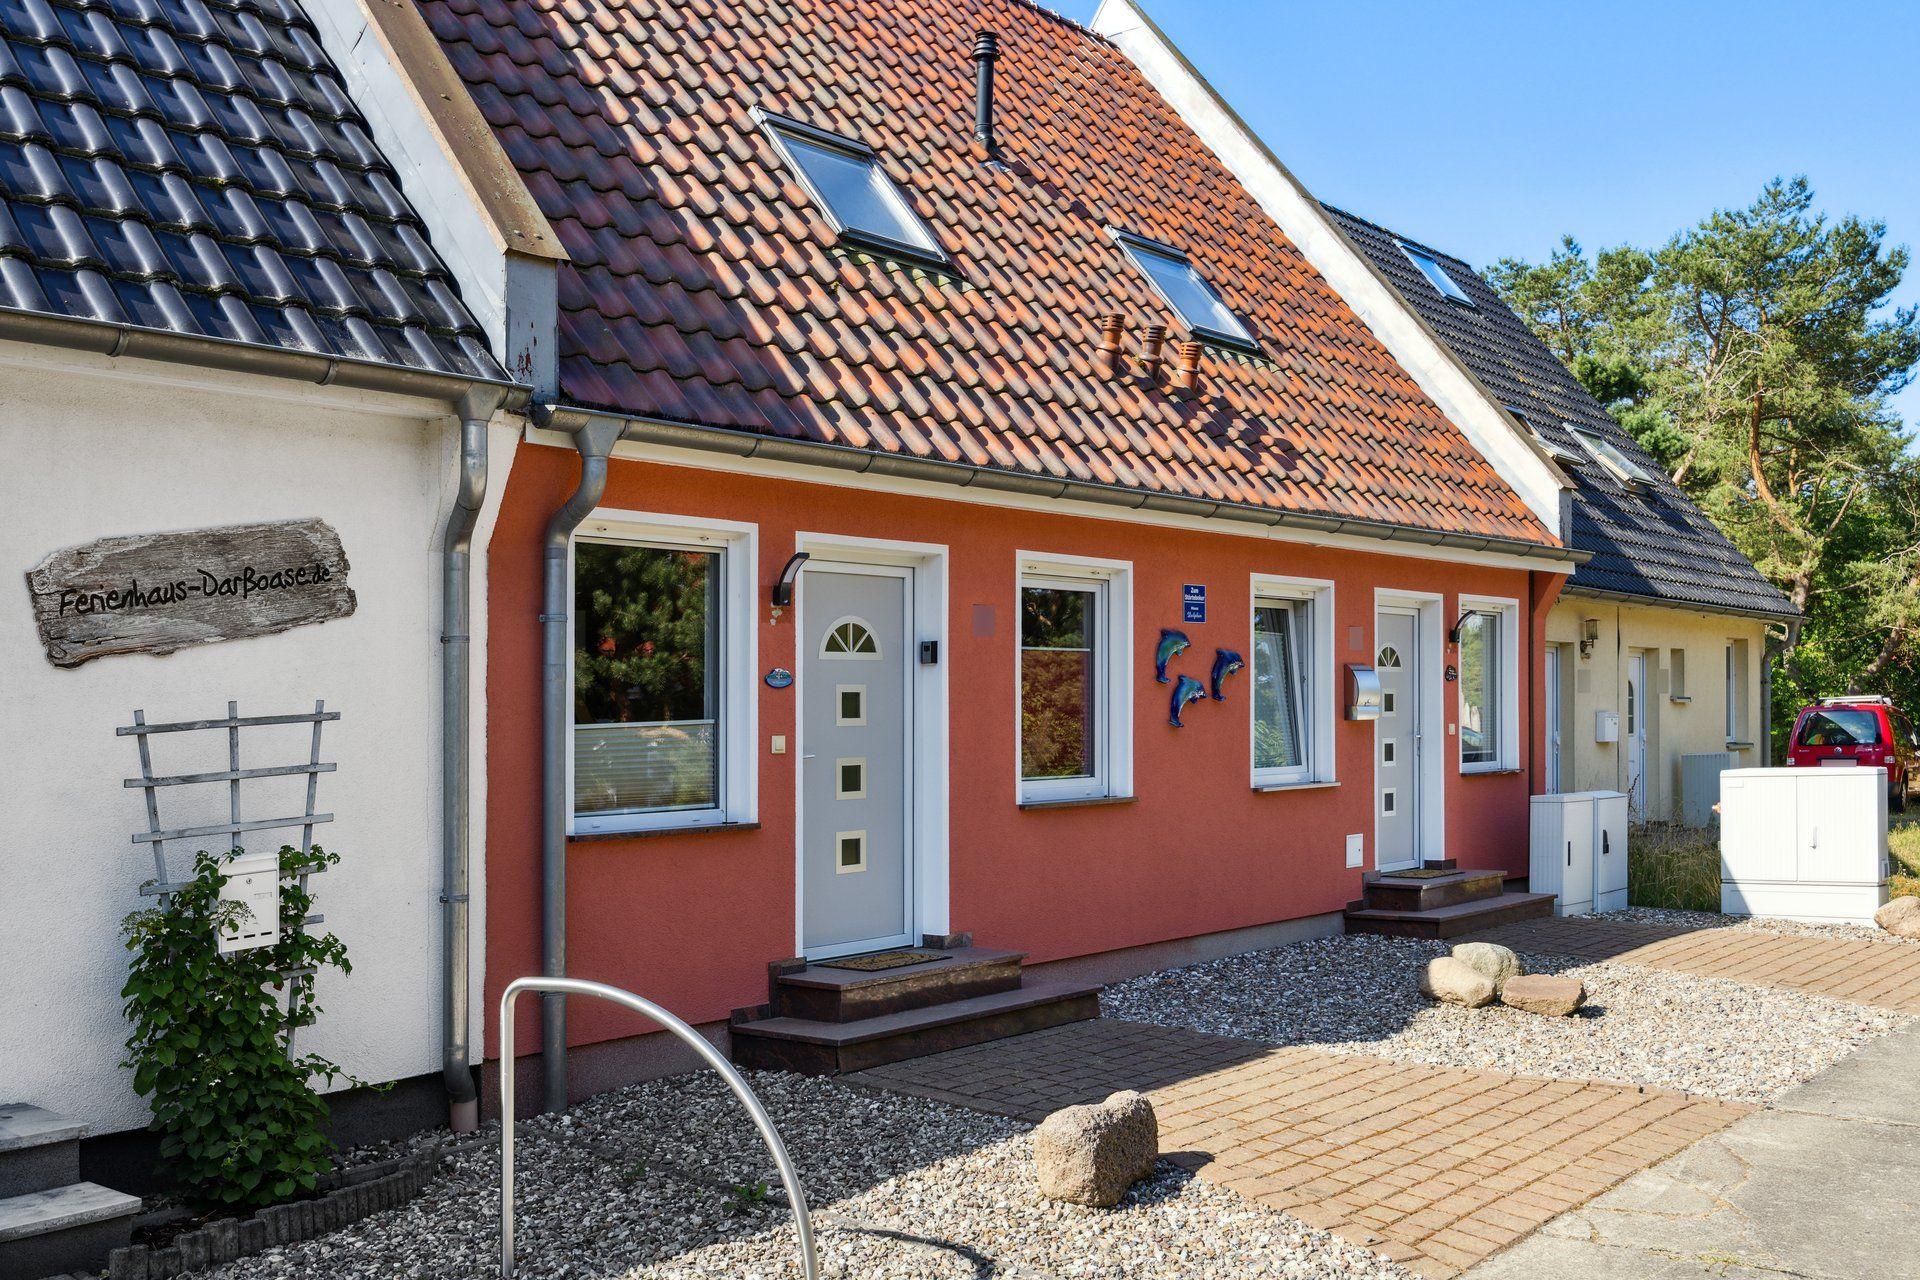 Ferienhaus in Pruchten mit Terrasse, Grill und Gar  an der Ostsee